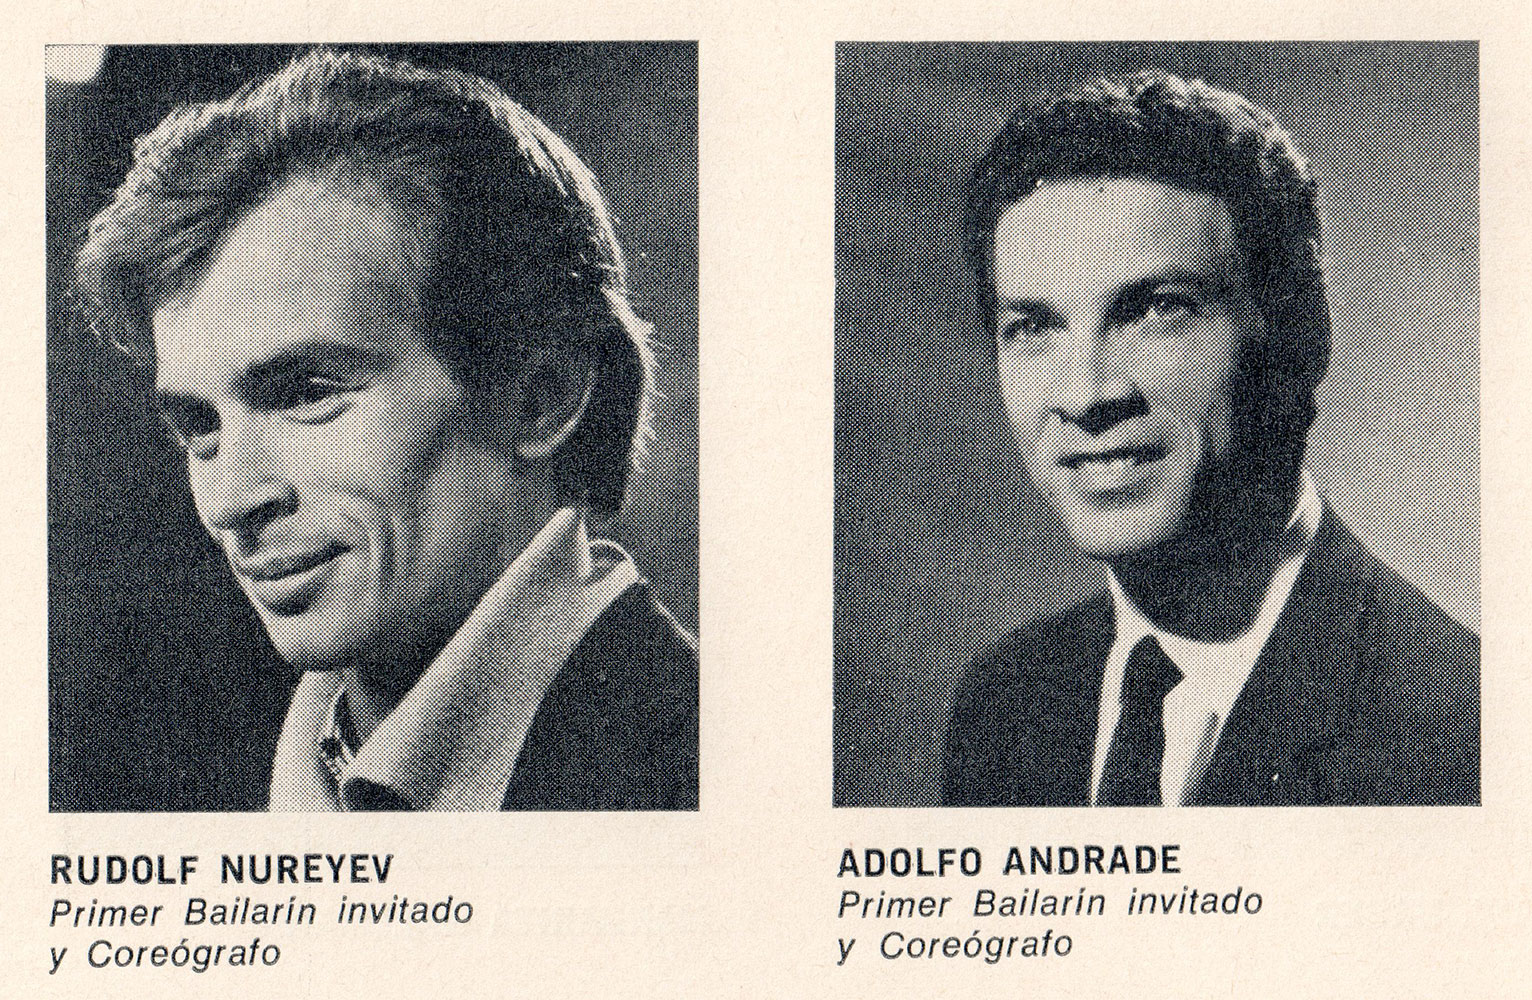 Teatro Colon de Buenos Aires - Adolfo Andrade - Rudolf Nureyev - 1971